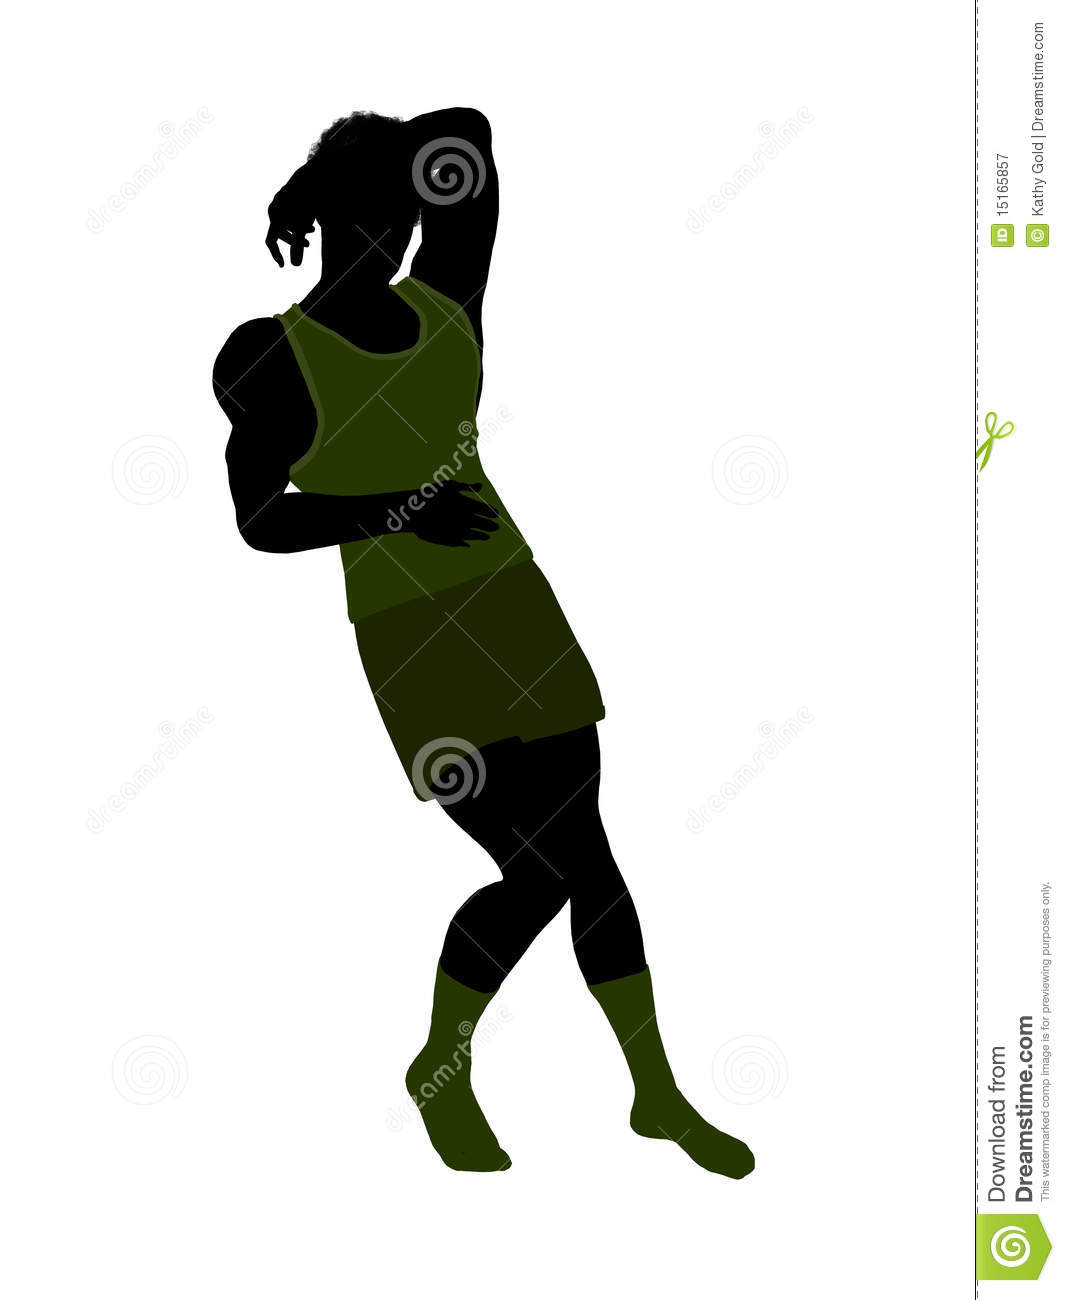 African American Male Model Wearing Underwear Illustration Silhouette